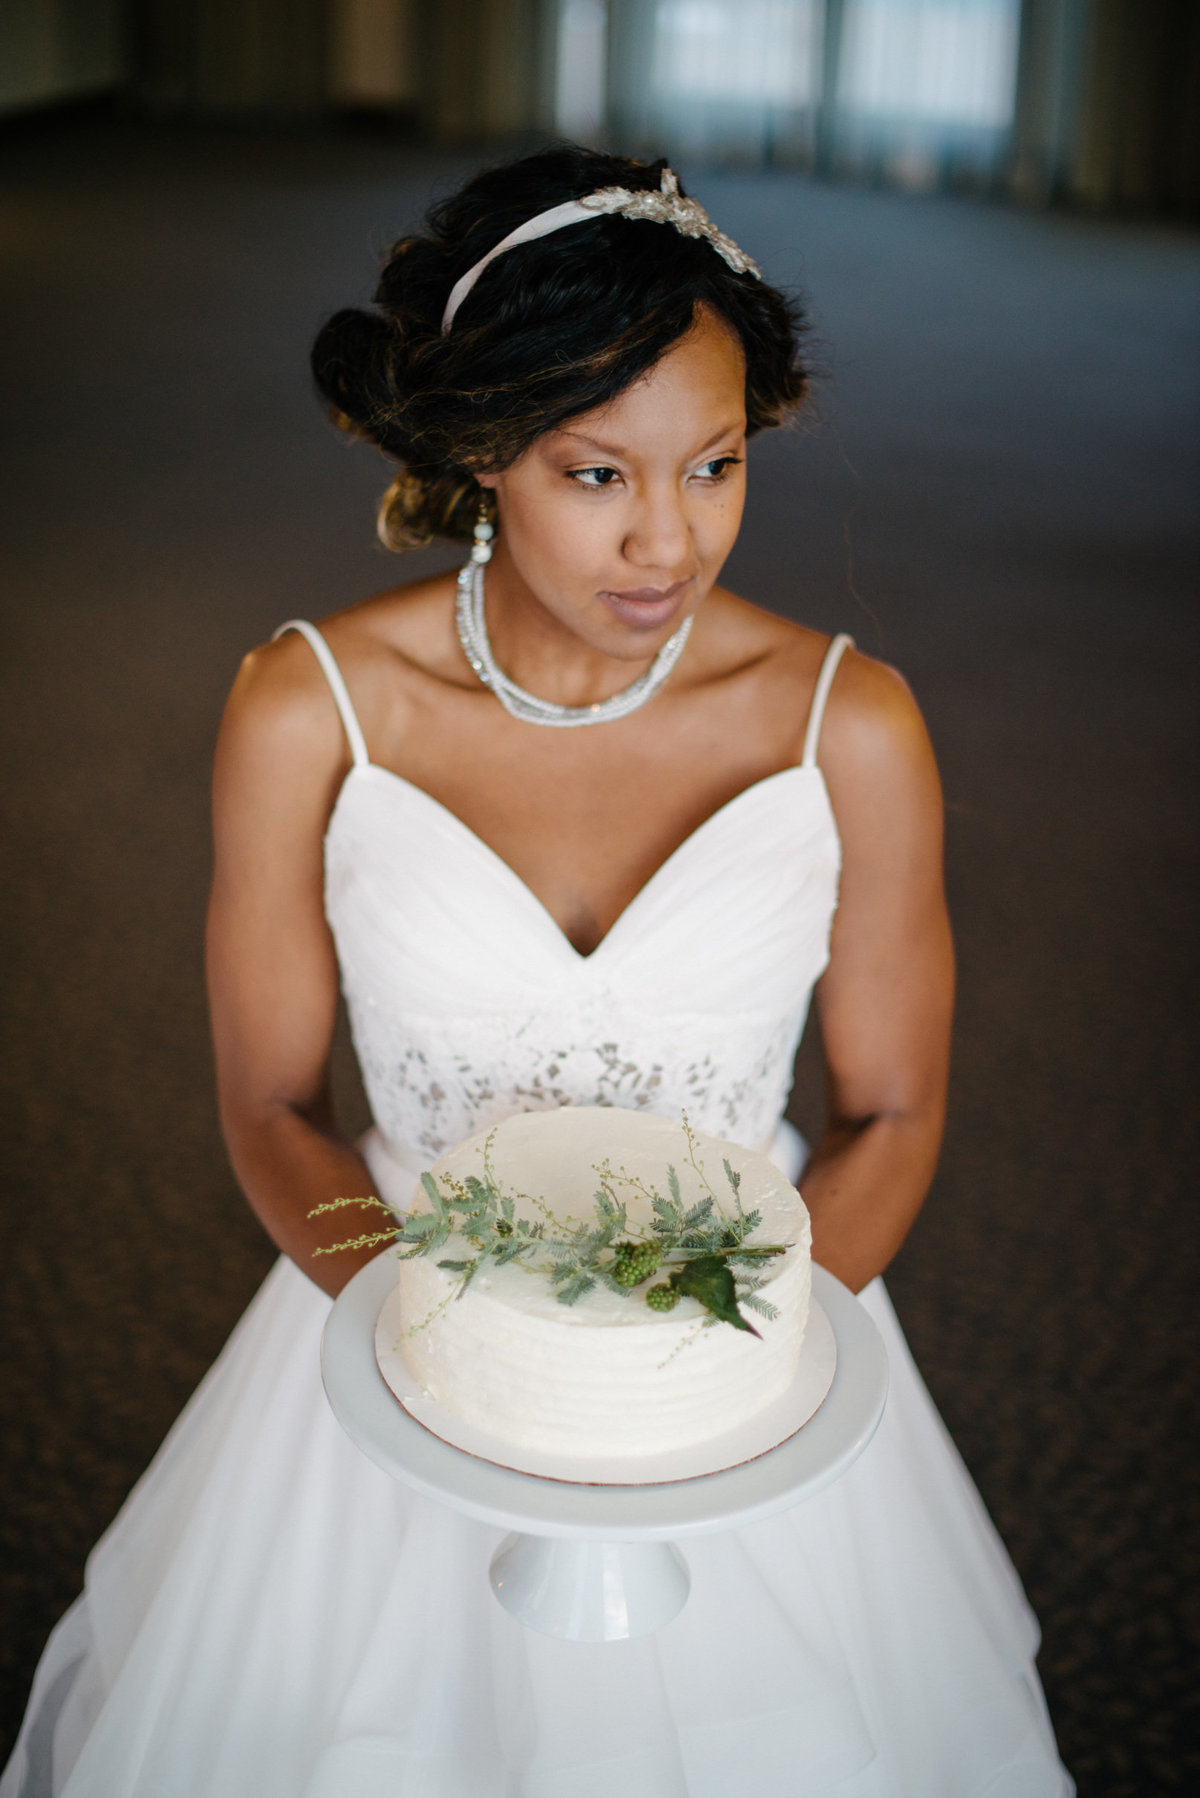 Bride holding wedding cake at Edgewater Hotel